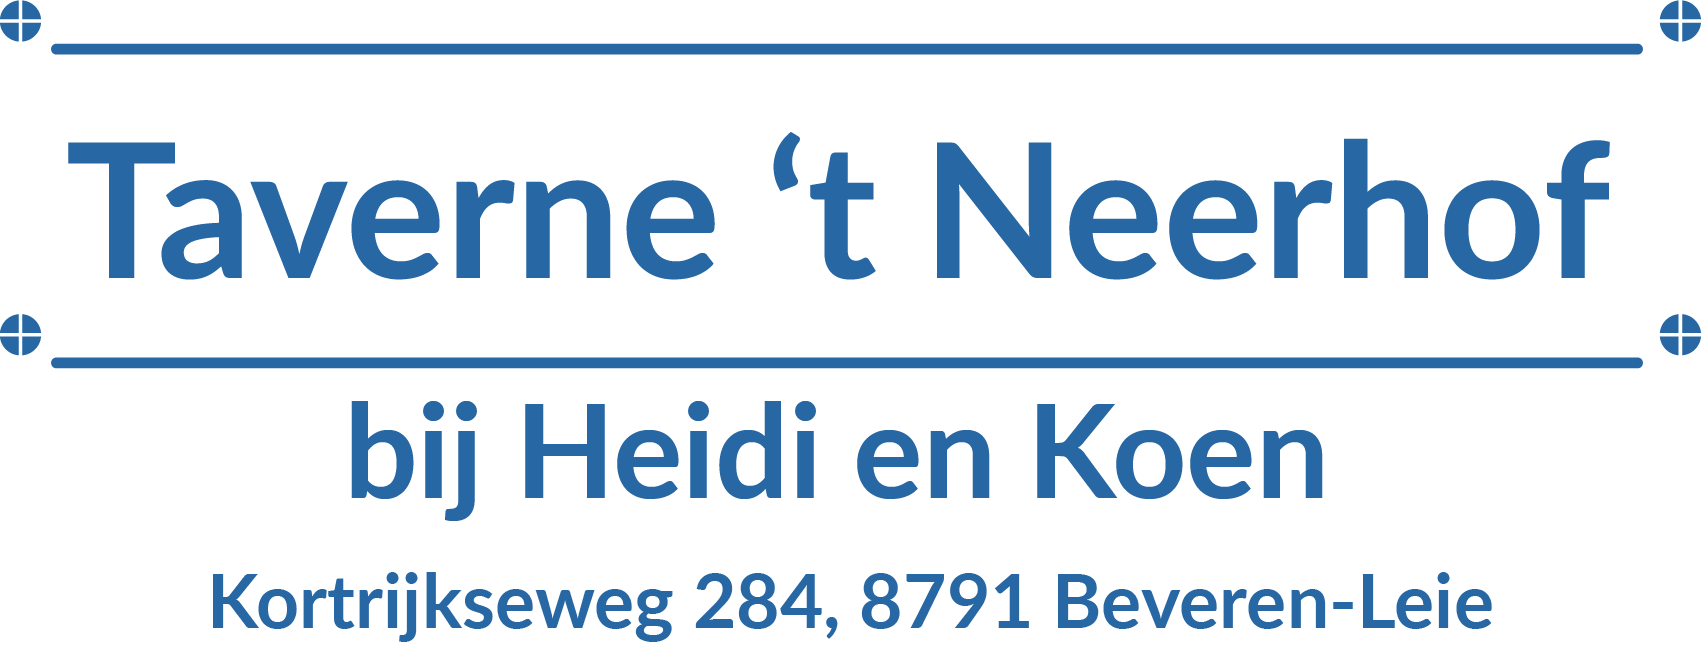 Taverne 't Neerhof - Sponsor KSK Beveren-Leie